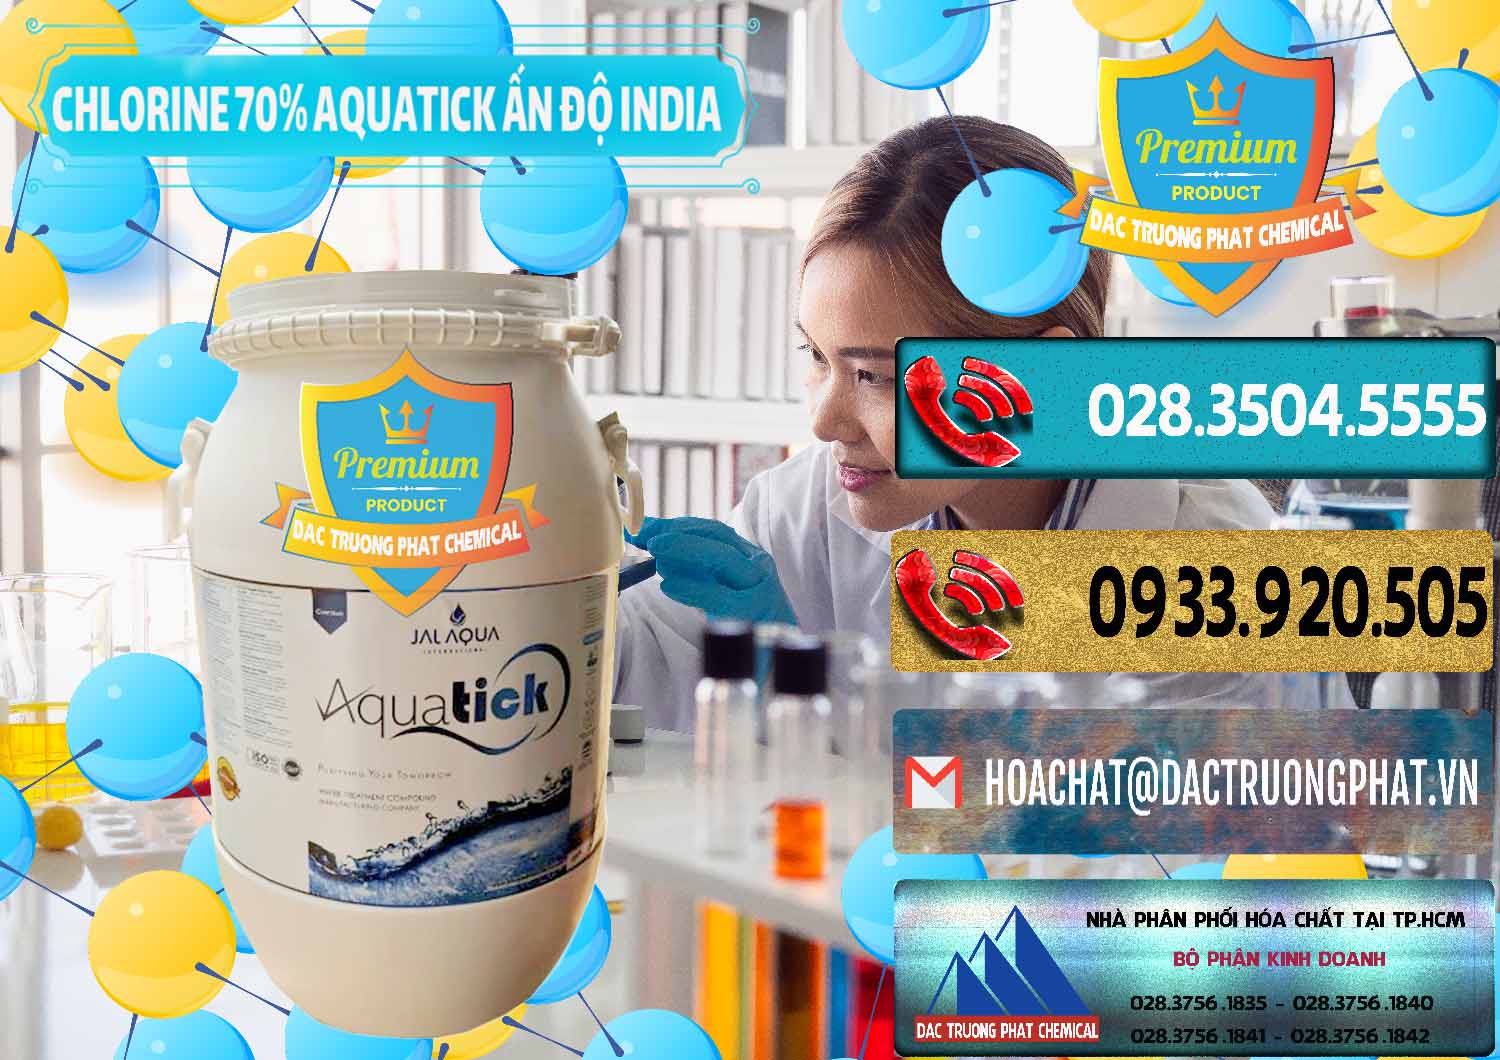 Chuyên bán ( cung cấp ) Chlorine – Clorin 70% Aquatick Jal Aqua Ấn Độ India - 0215 - Chuyên phân phối _ cung ứng hóa chất tại TP.HCM - hoachatdetnhuom.com